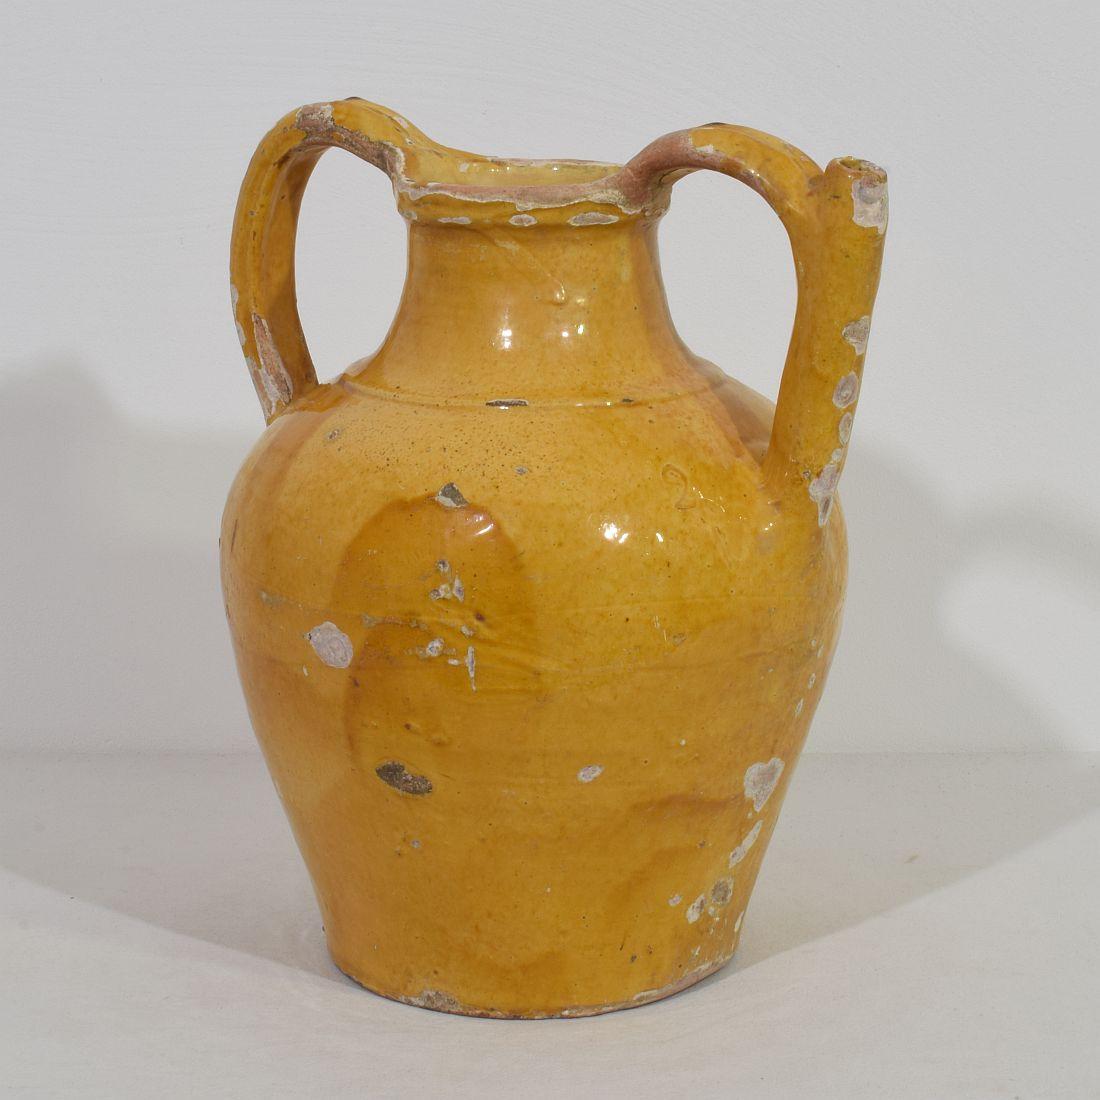 Großes authentisches und äußerst seltenes Stück Keramik mit einer Tülle im Henkel aus der Provence namens: Orjol du Lauragais. Schöne verwitterte gelbe Glasur. Unvollkommenheiten tragen dazu bei, diese Wasserkrüge als Gebrauchsgegenstand zu